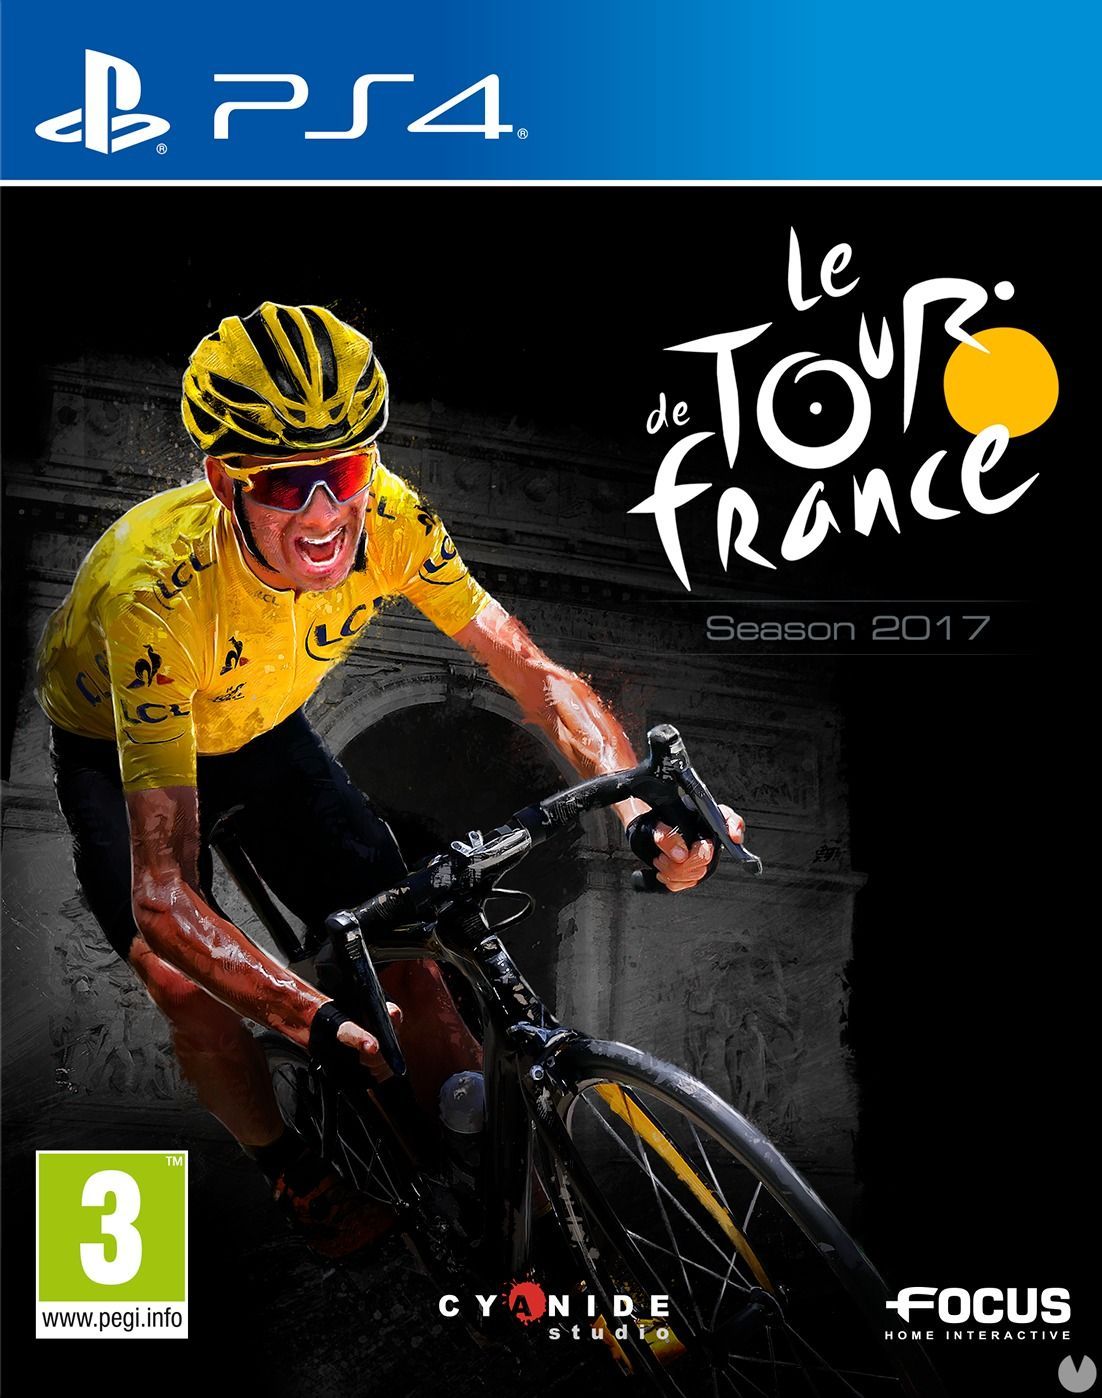 Hacer desvanecerse marcador Le Tour de France 2017 - Videojuego (PS4 y Xbox One) - Vandal